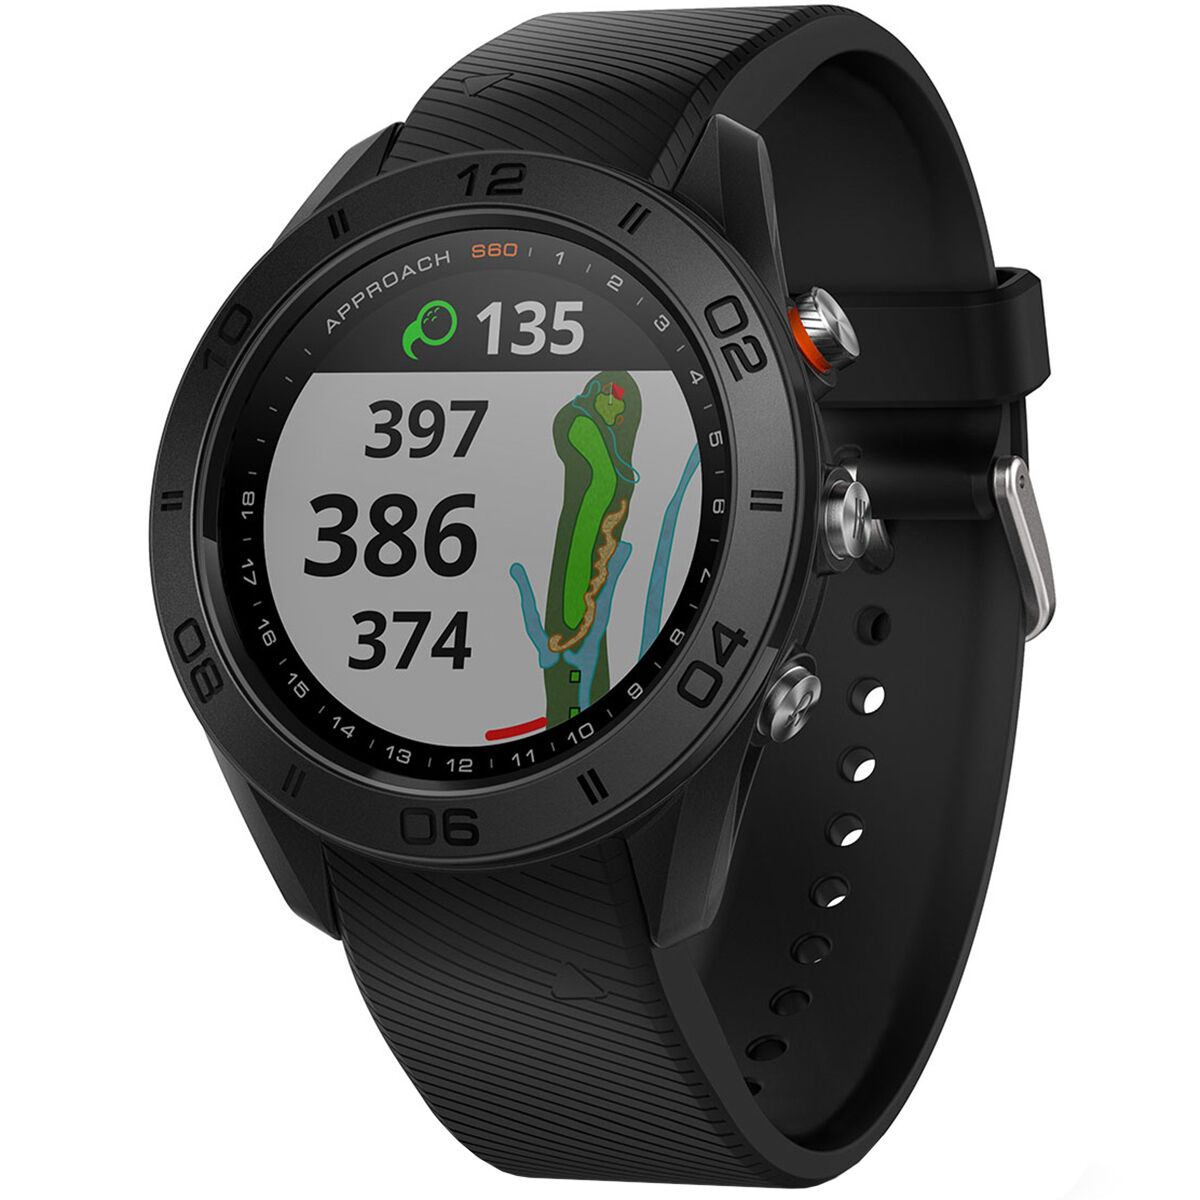 Garmin Approach S60 GPS Watch from 